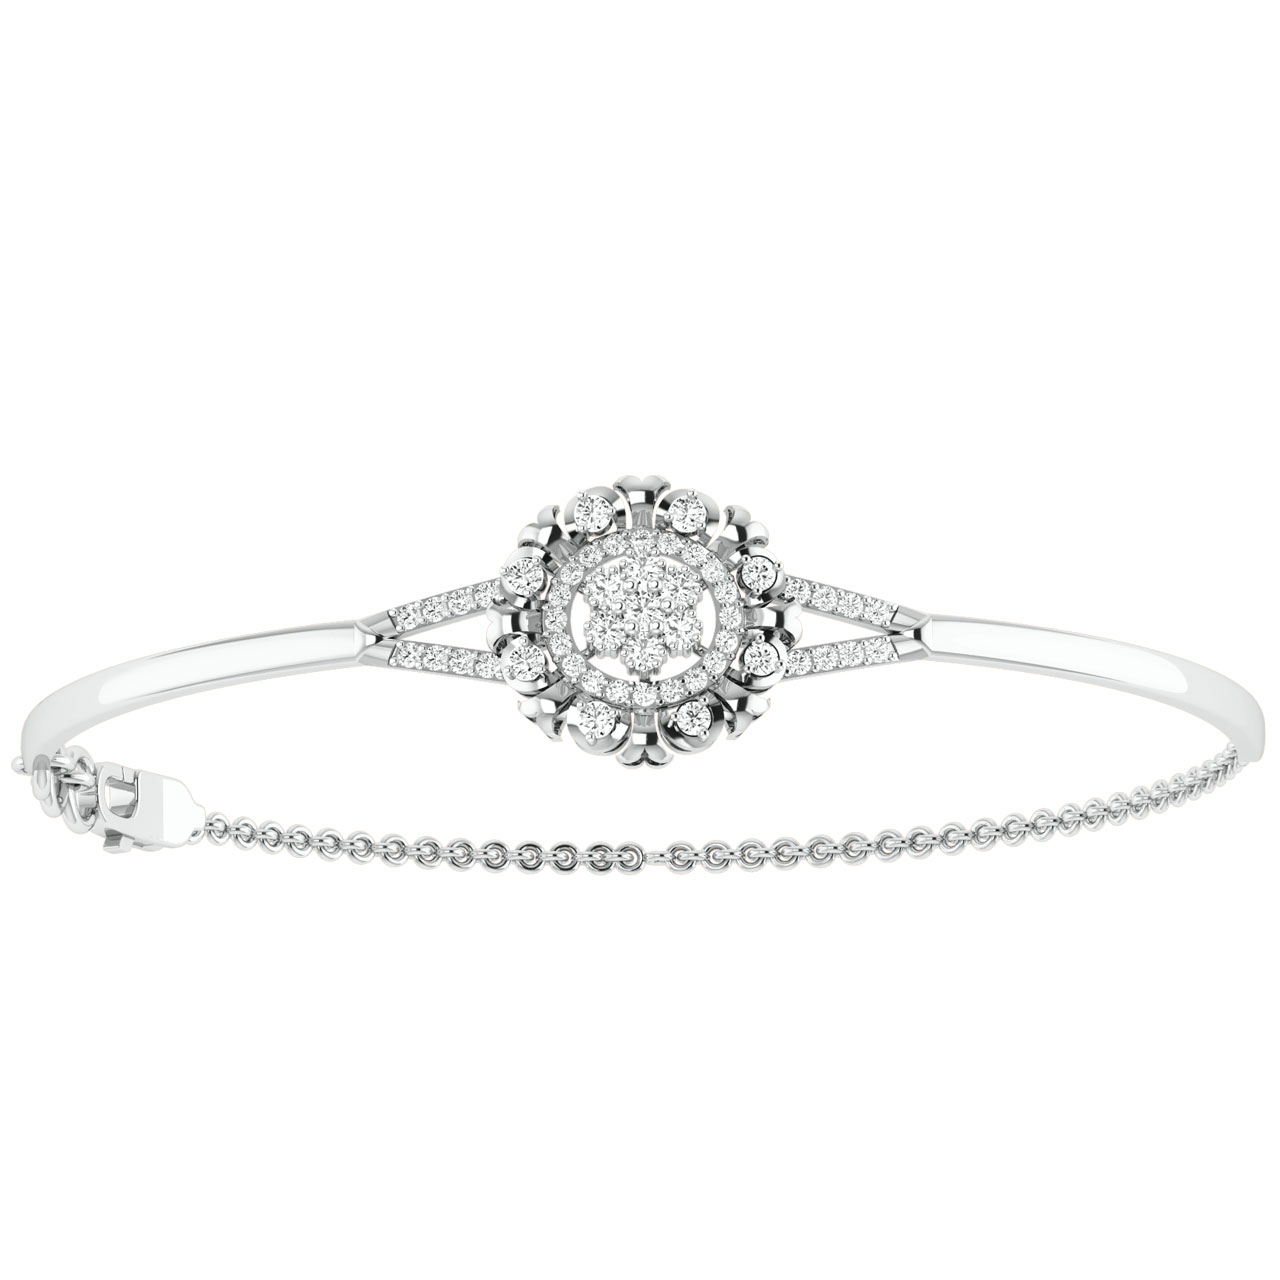 Floral Design Diamond Bracelet For Her